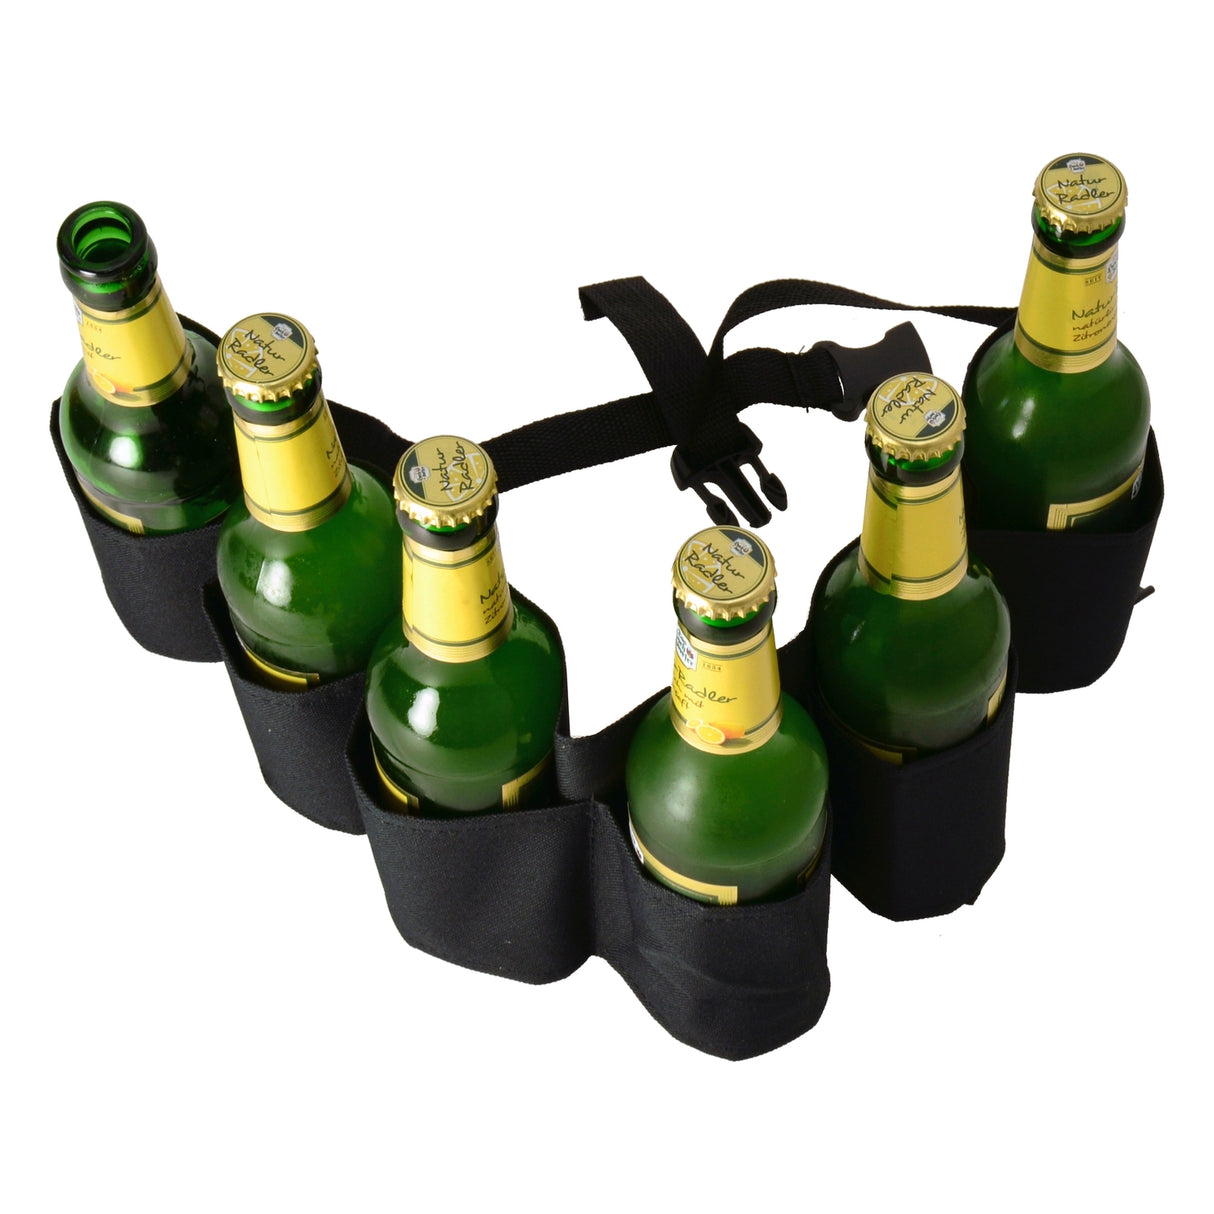 Bier Gürtel mit Flaschenöffner, 6 Flaschen tragen und öffnen